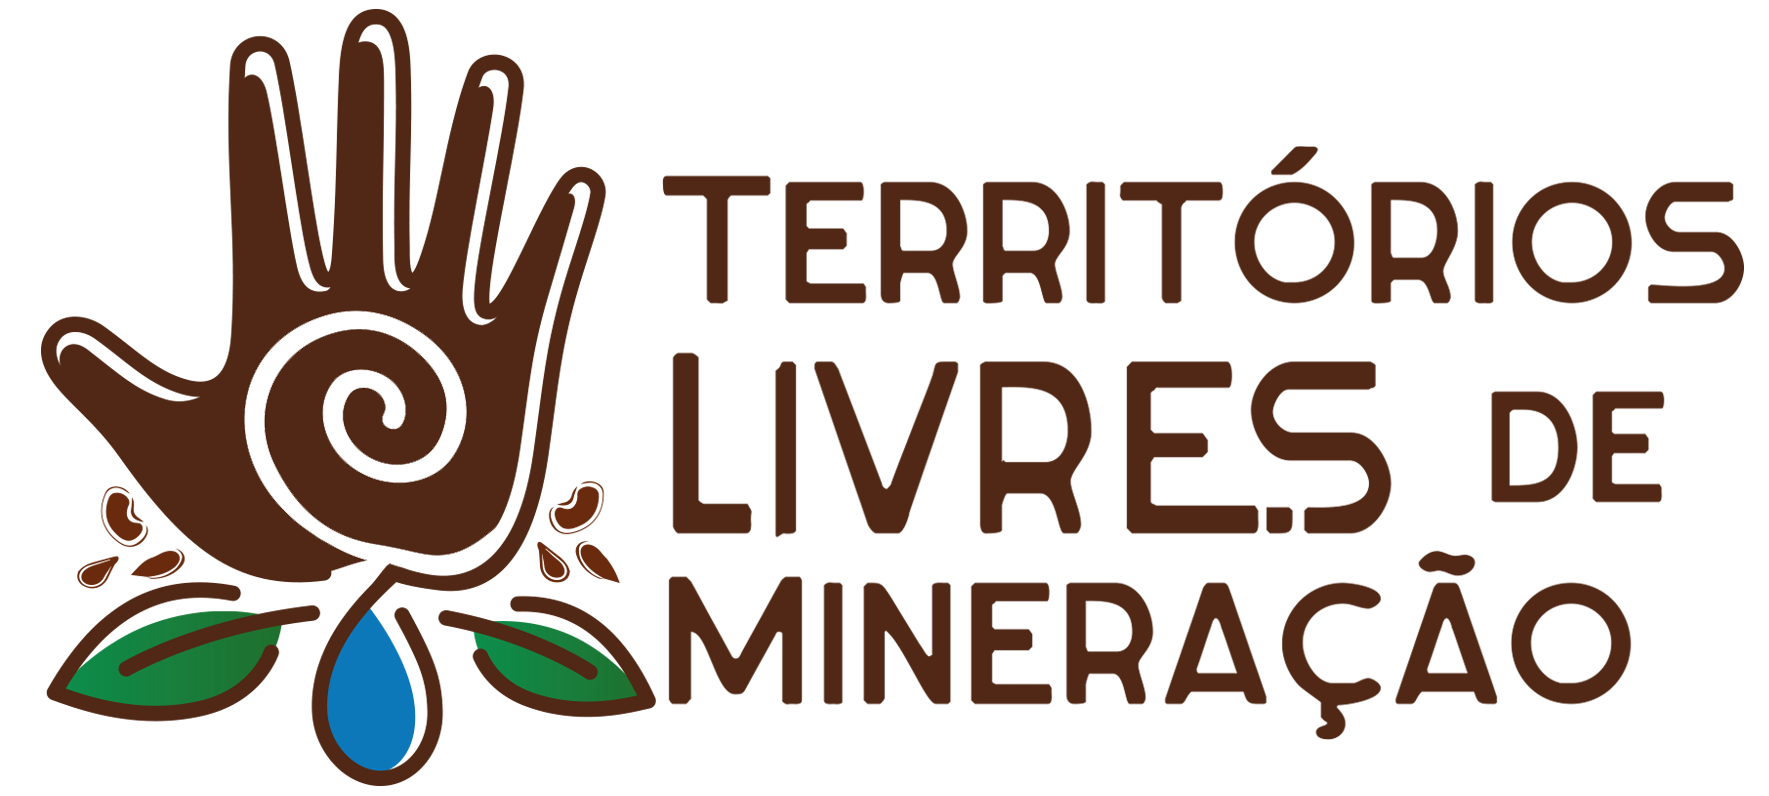 Territórios Livres de Mineração